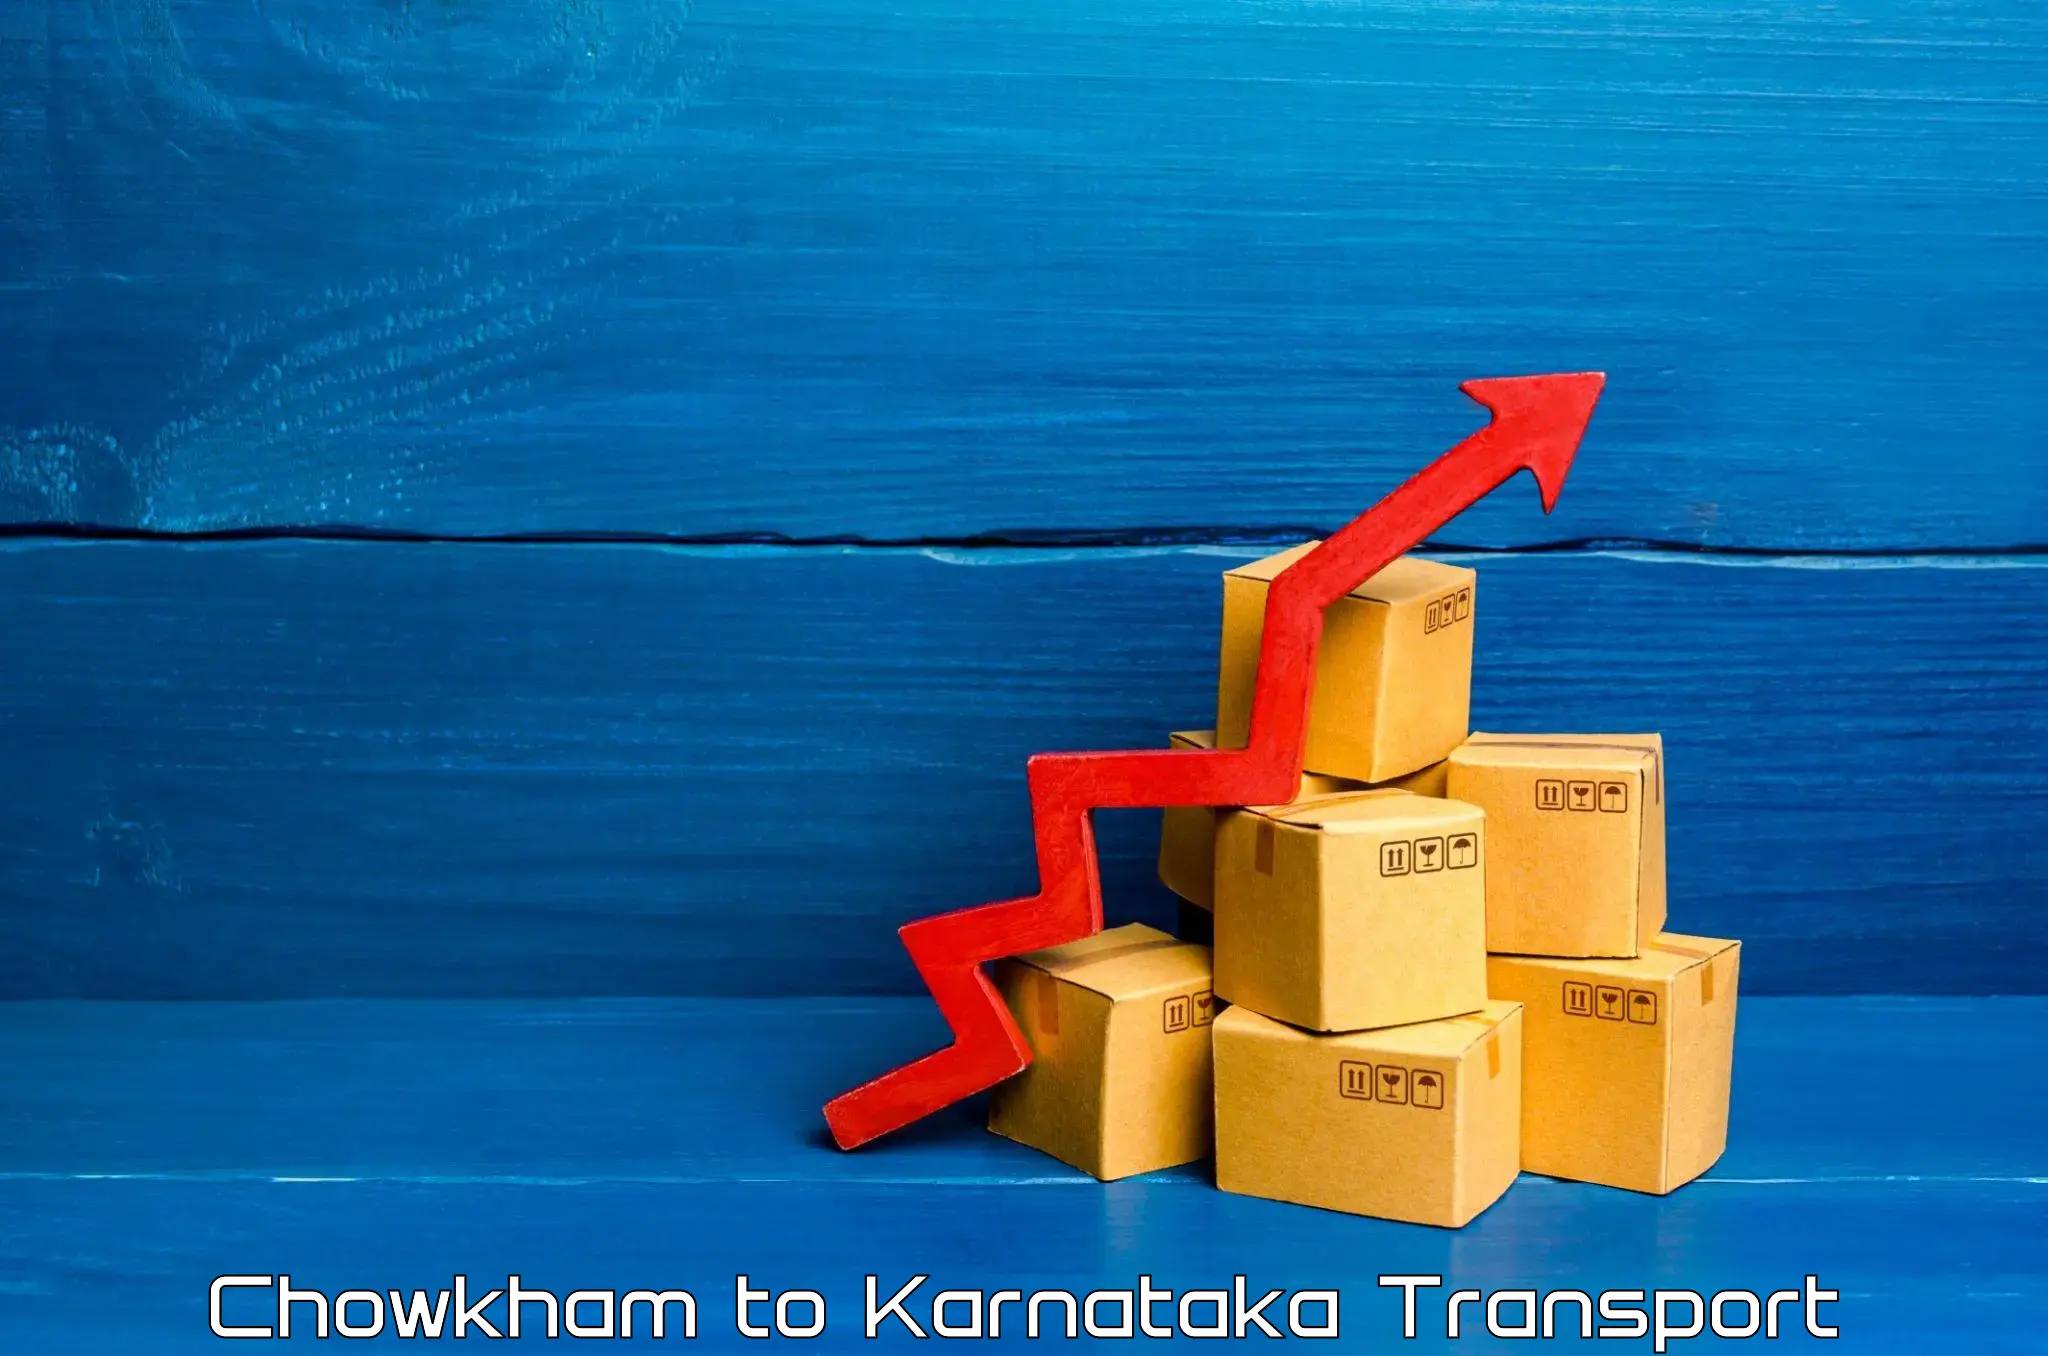 Transport in sharing Chowkham to Chikkanayakanahalli